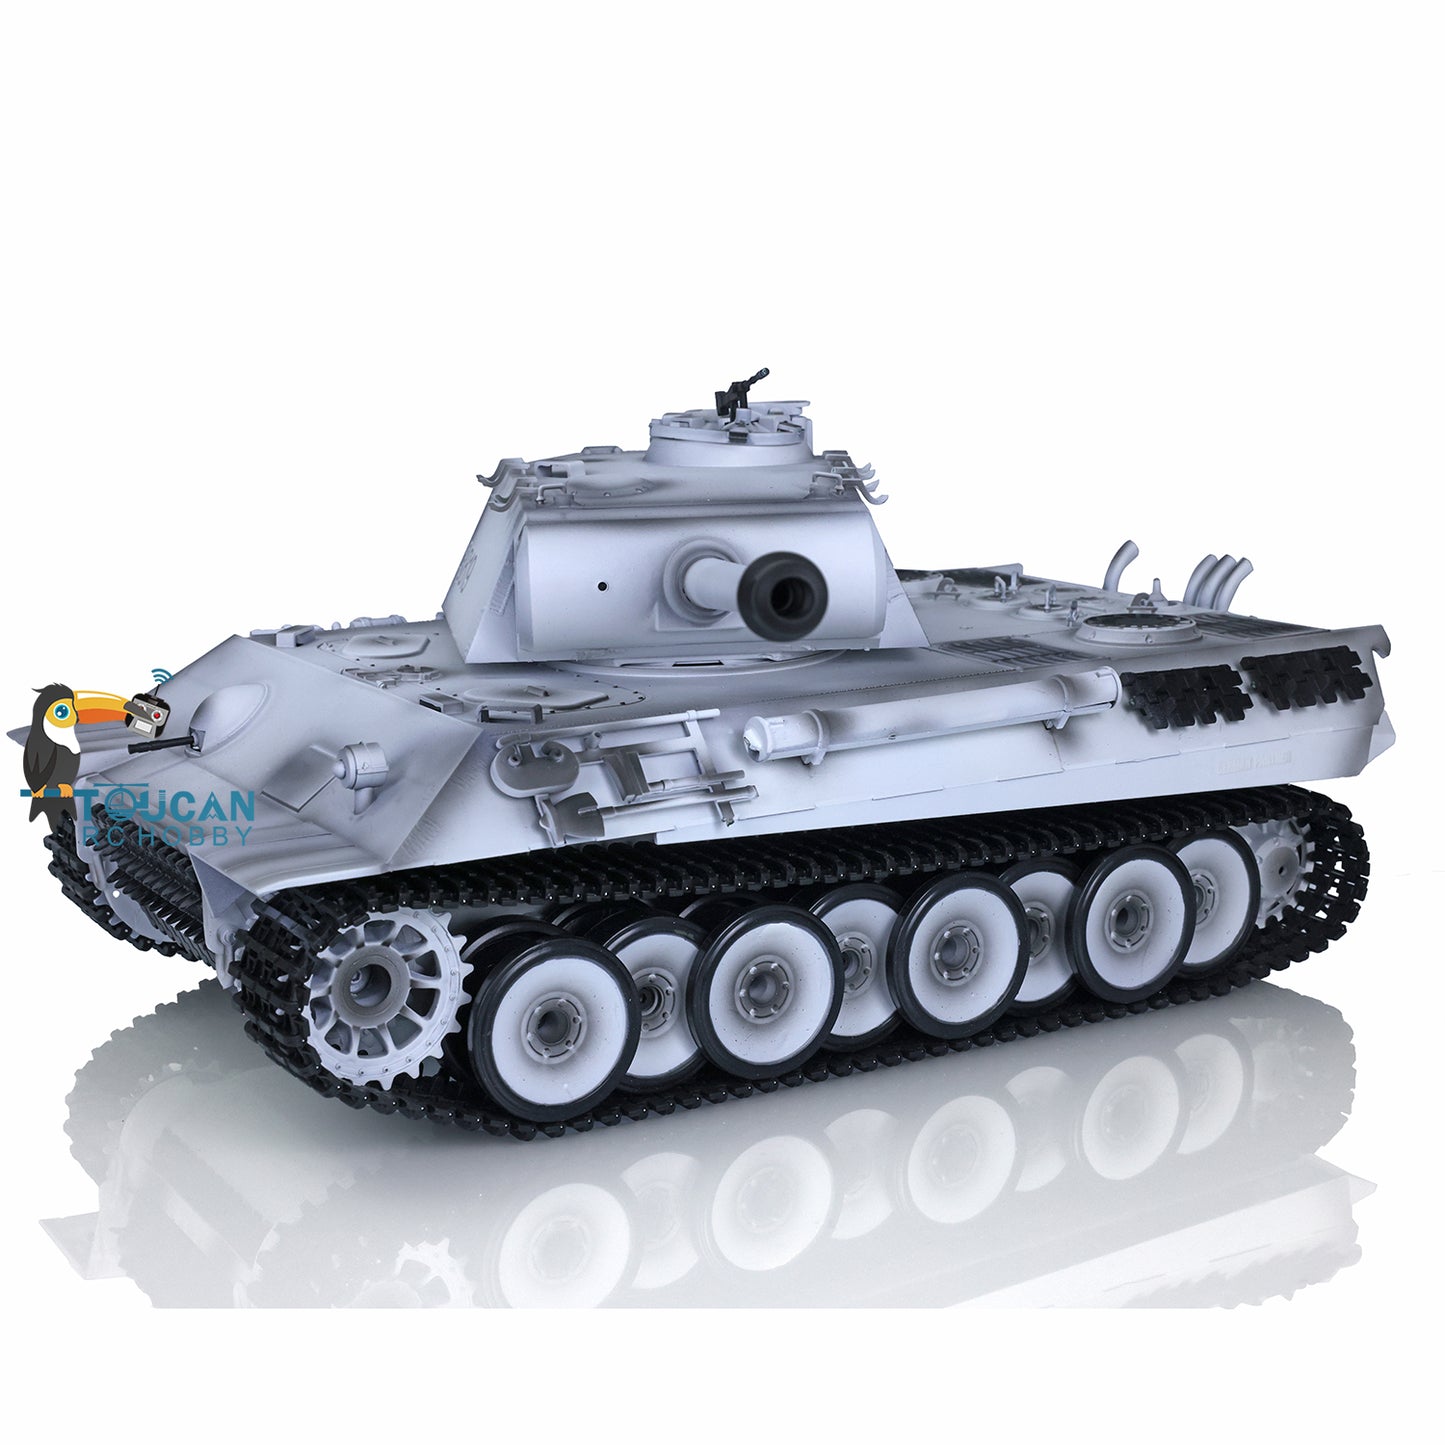 Henglong 1/16 Customized RC Tank TK7.0 German Panther Tank 3819 w/ 360 Degrees Rotating Turret Metal Tracks Sprocket Road Wheels